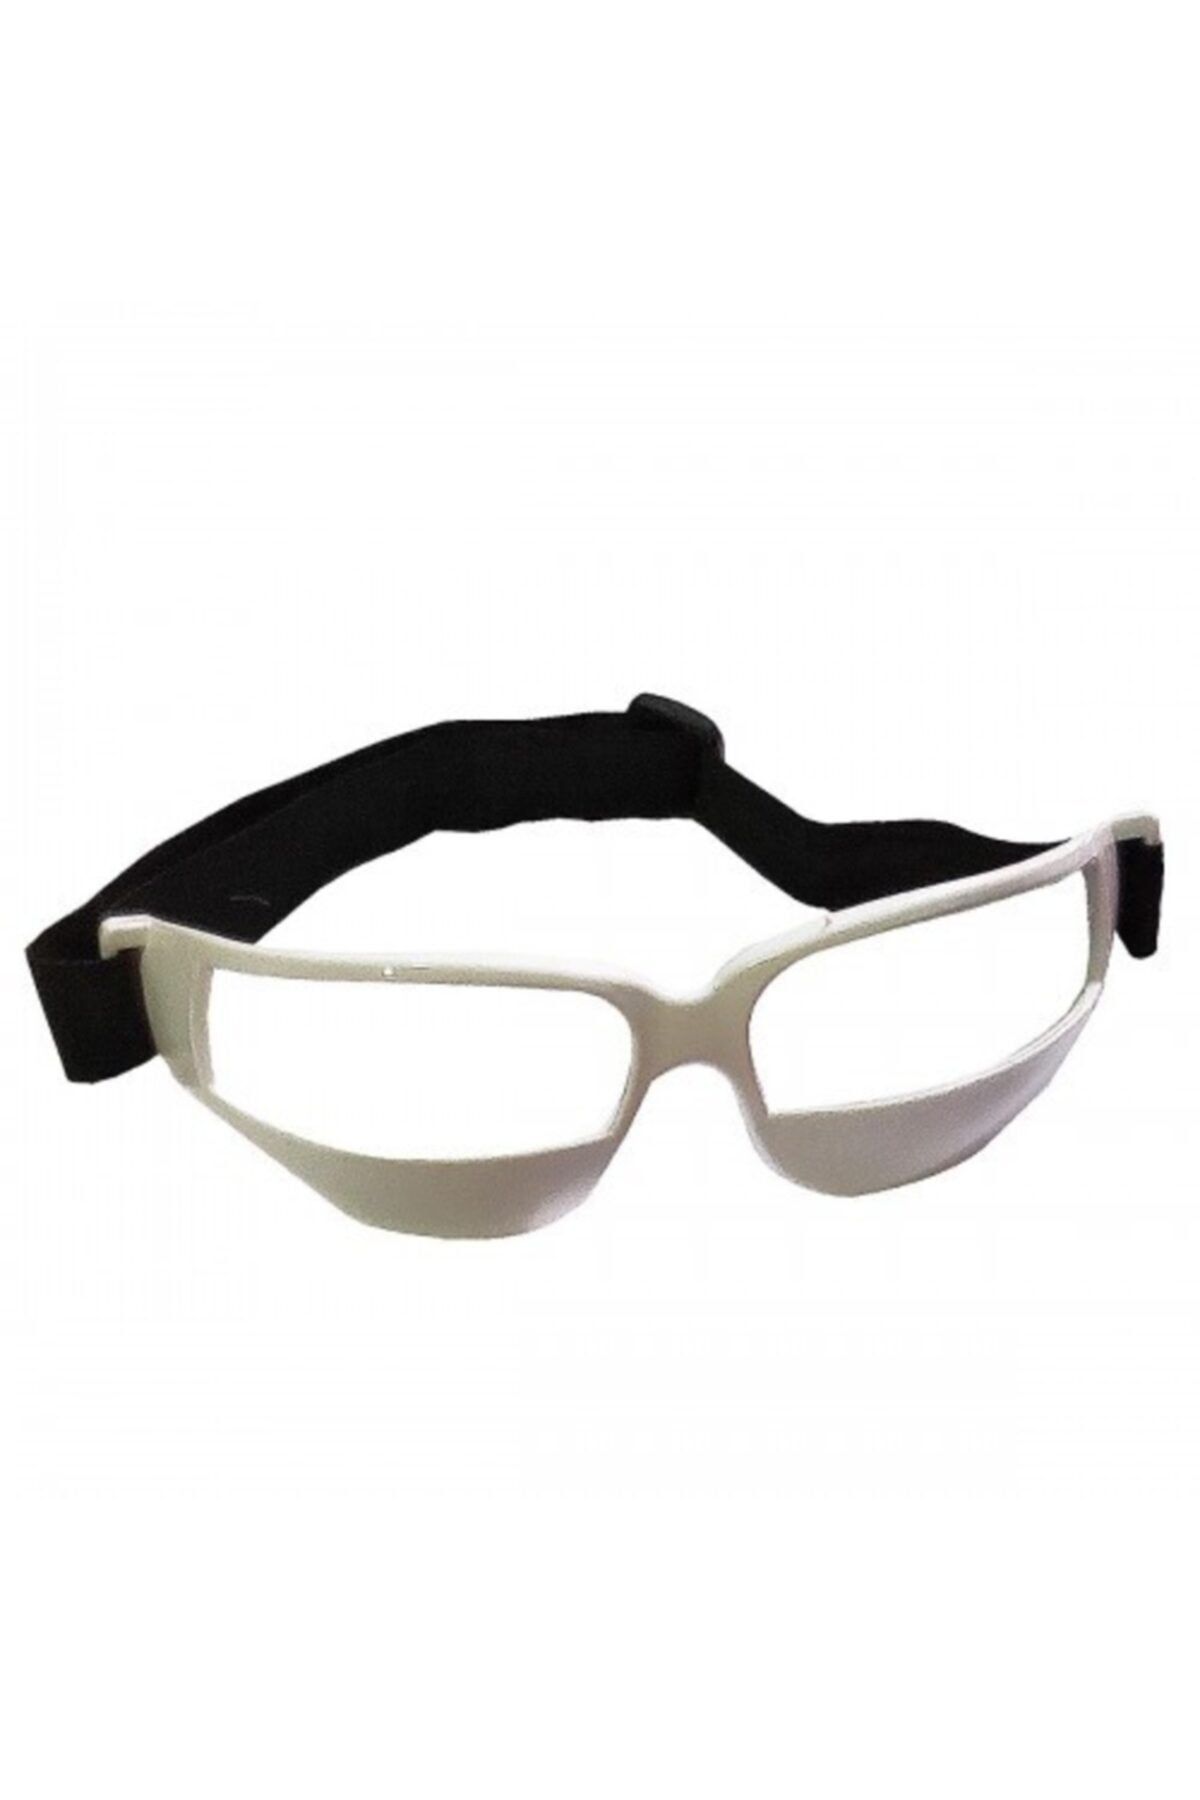 Avessa Ayarlanabilir Basketbol Dripling Gözlüğü Court Vision Top Sürme Gözlüğü Beyaz